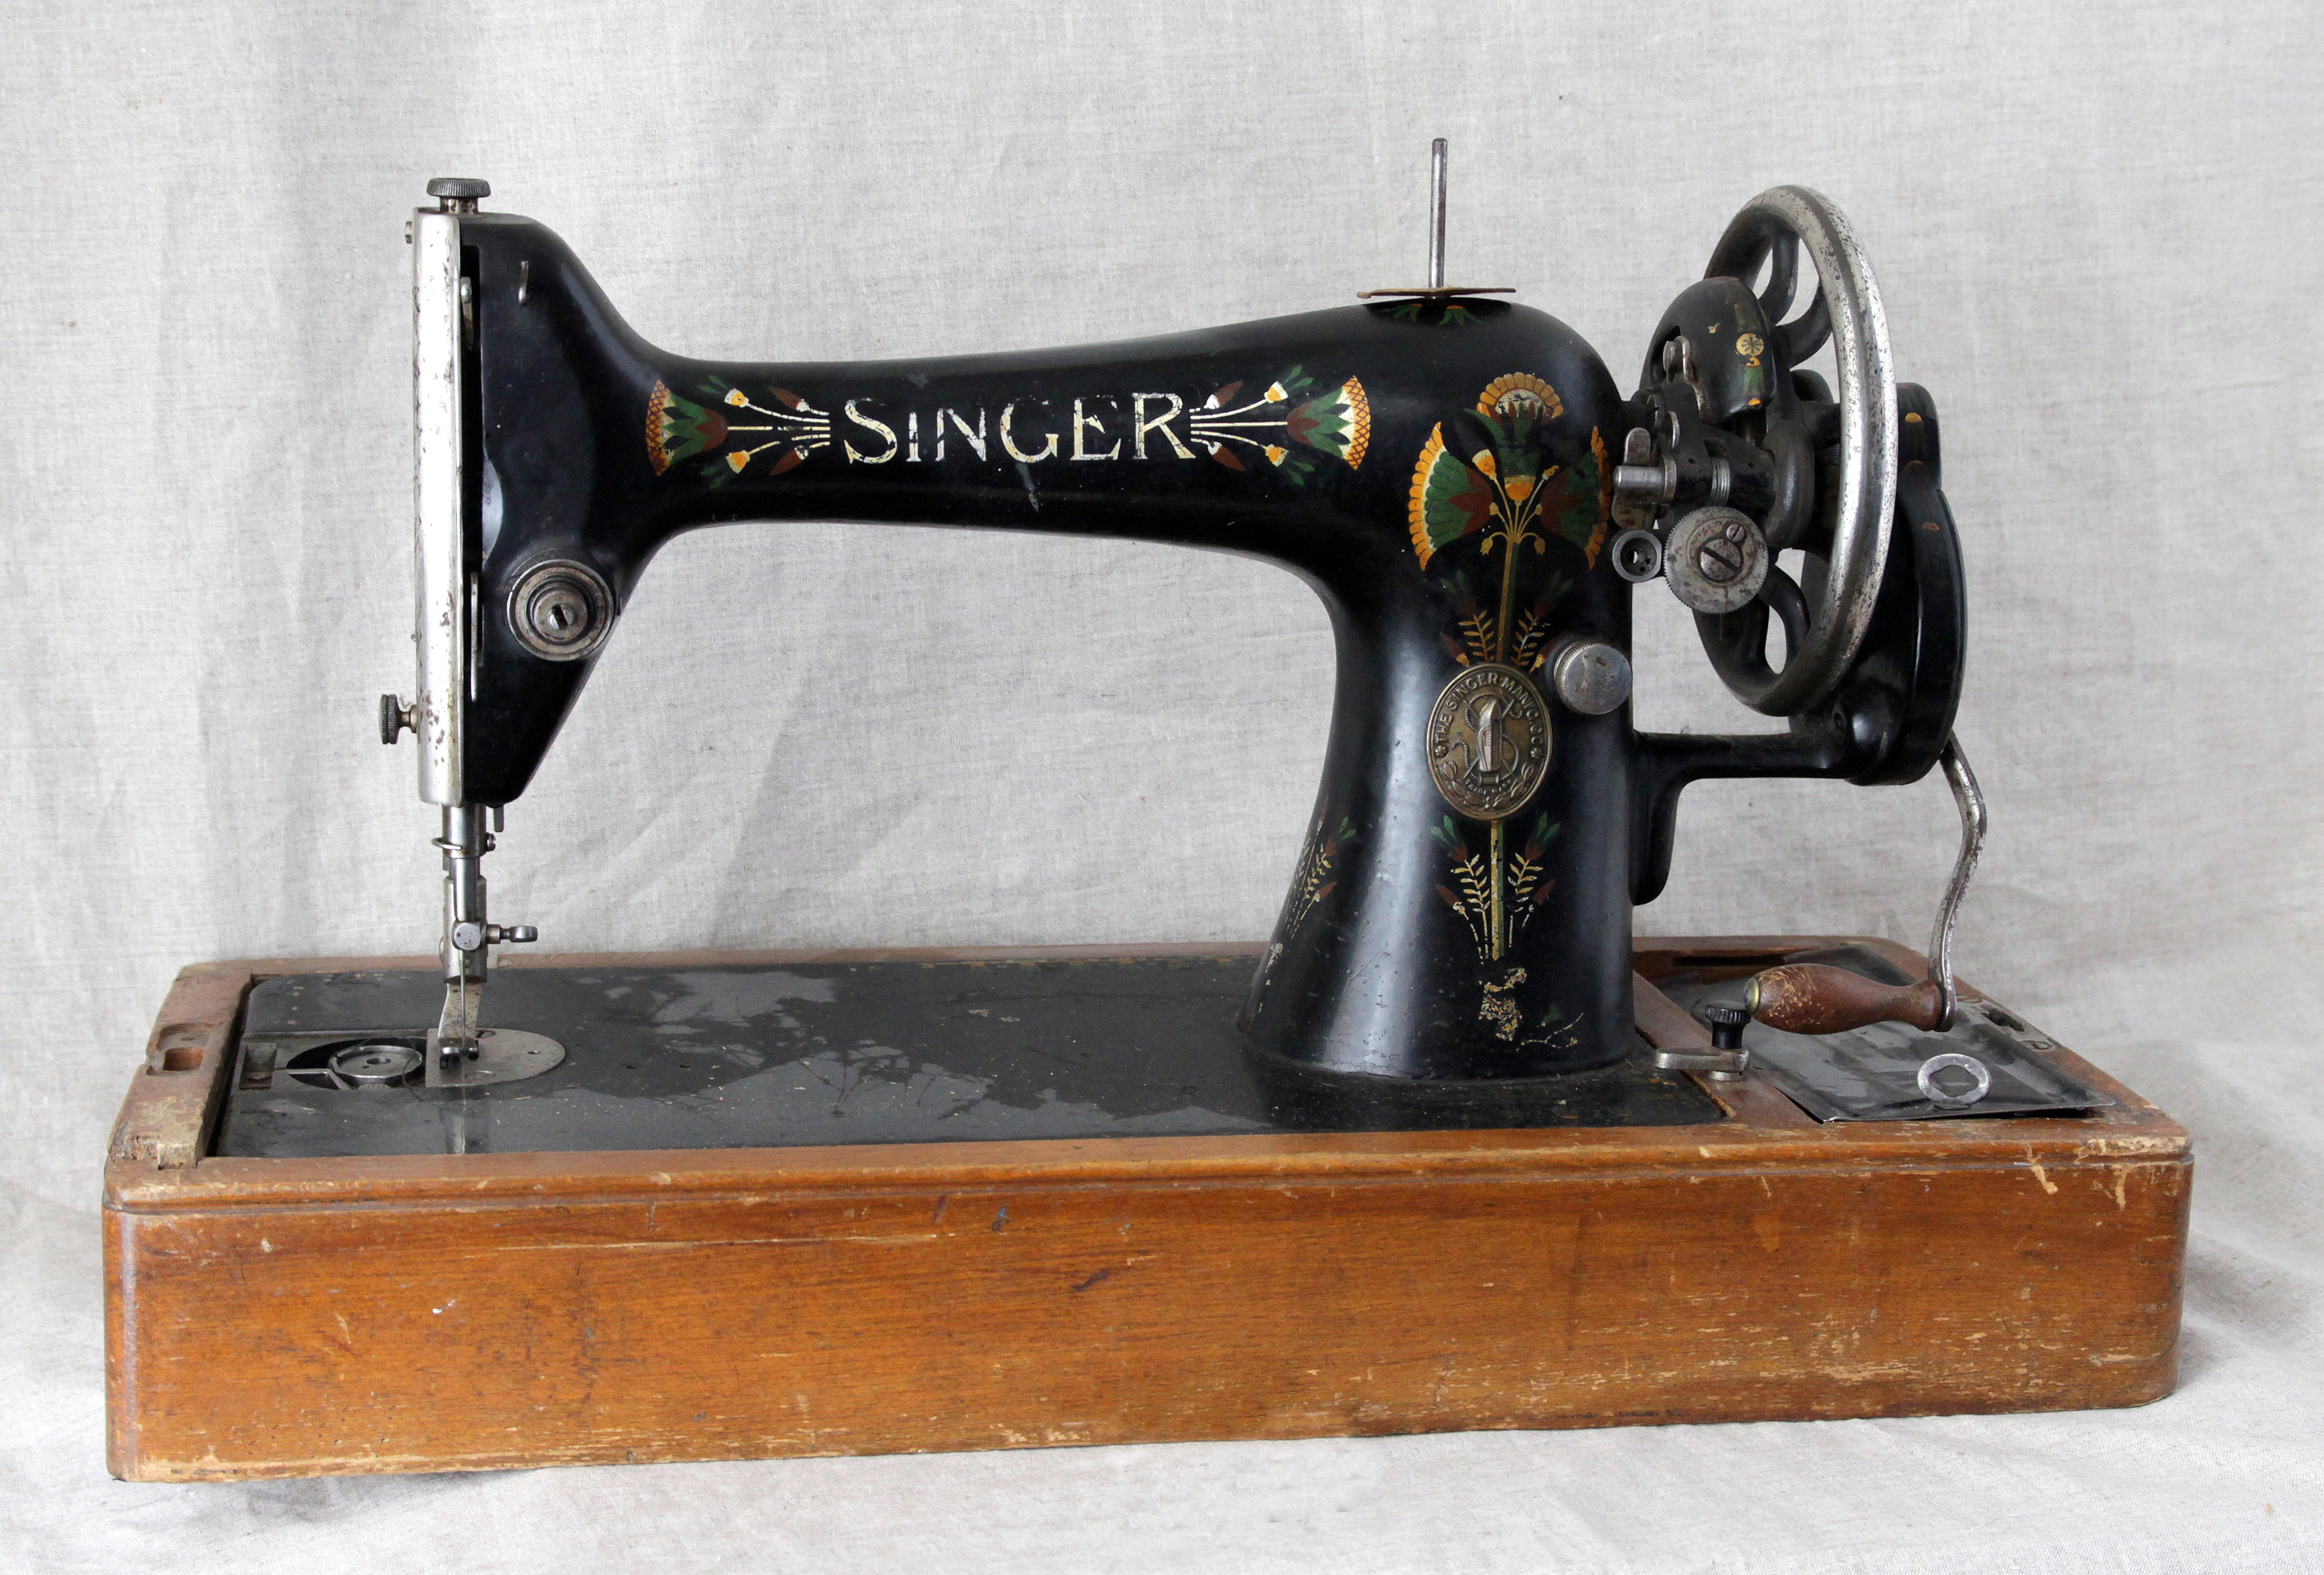 Швейная машинка зингер отзывы. Швейная машинка Зингер s010l. Швейная машинка (Zinger super 2001). Ручная швейная машинка (Zinger super 2001). Швейная машинка Зингер 201.